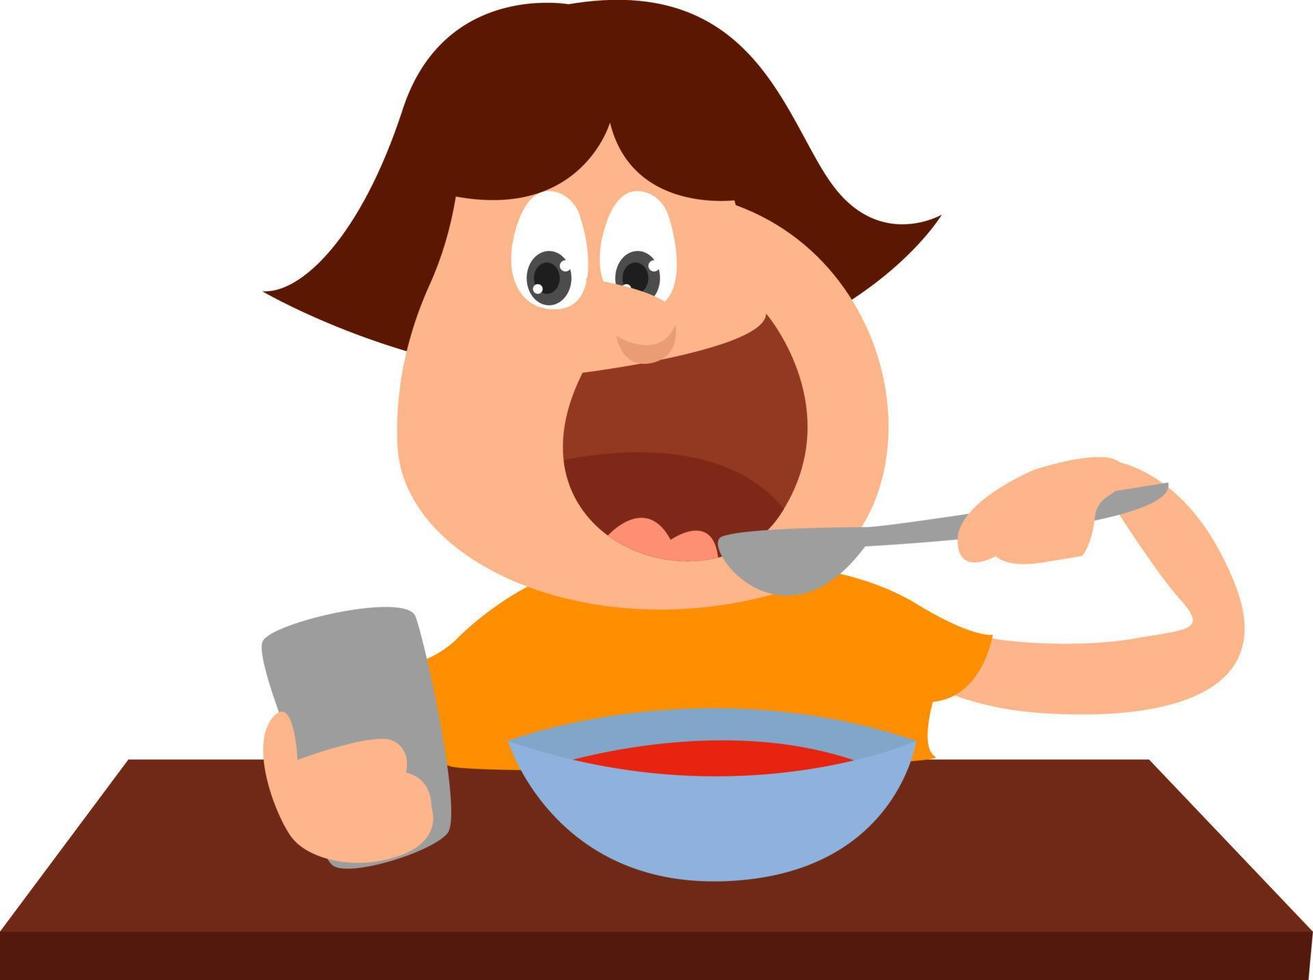 pojke äter lunch, illustration, vektor på vit bakgrund